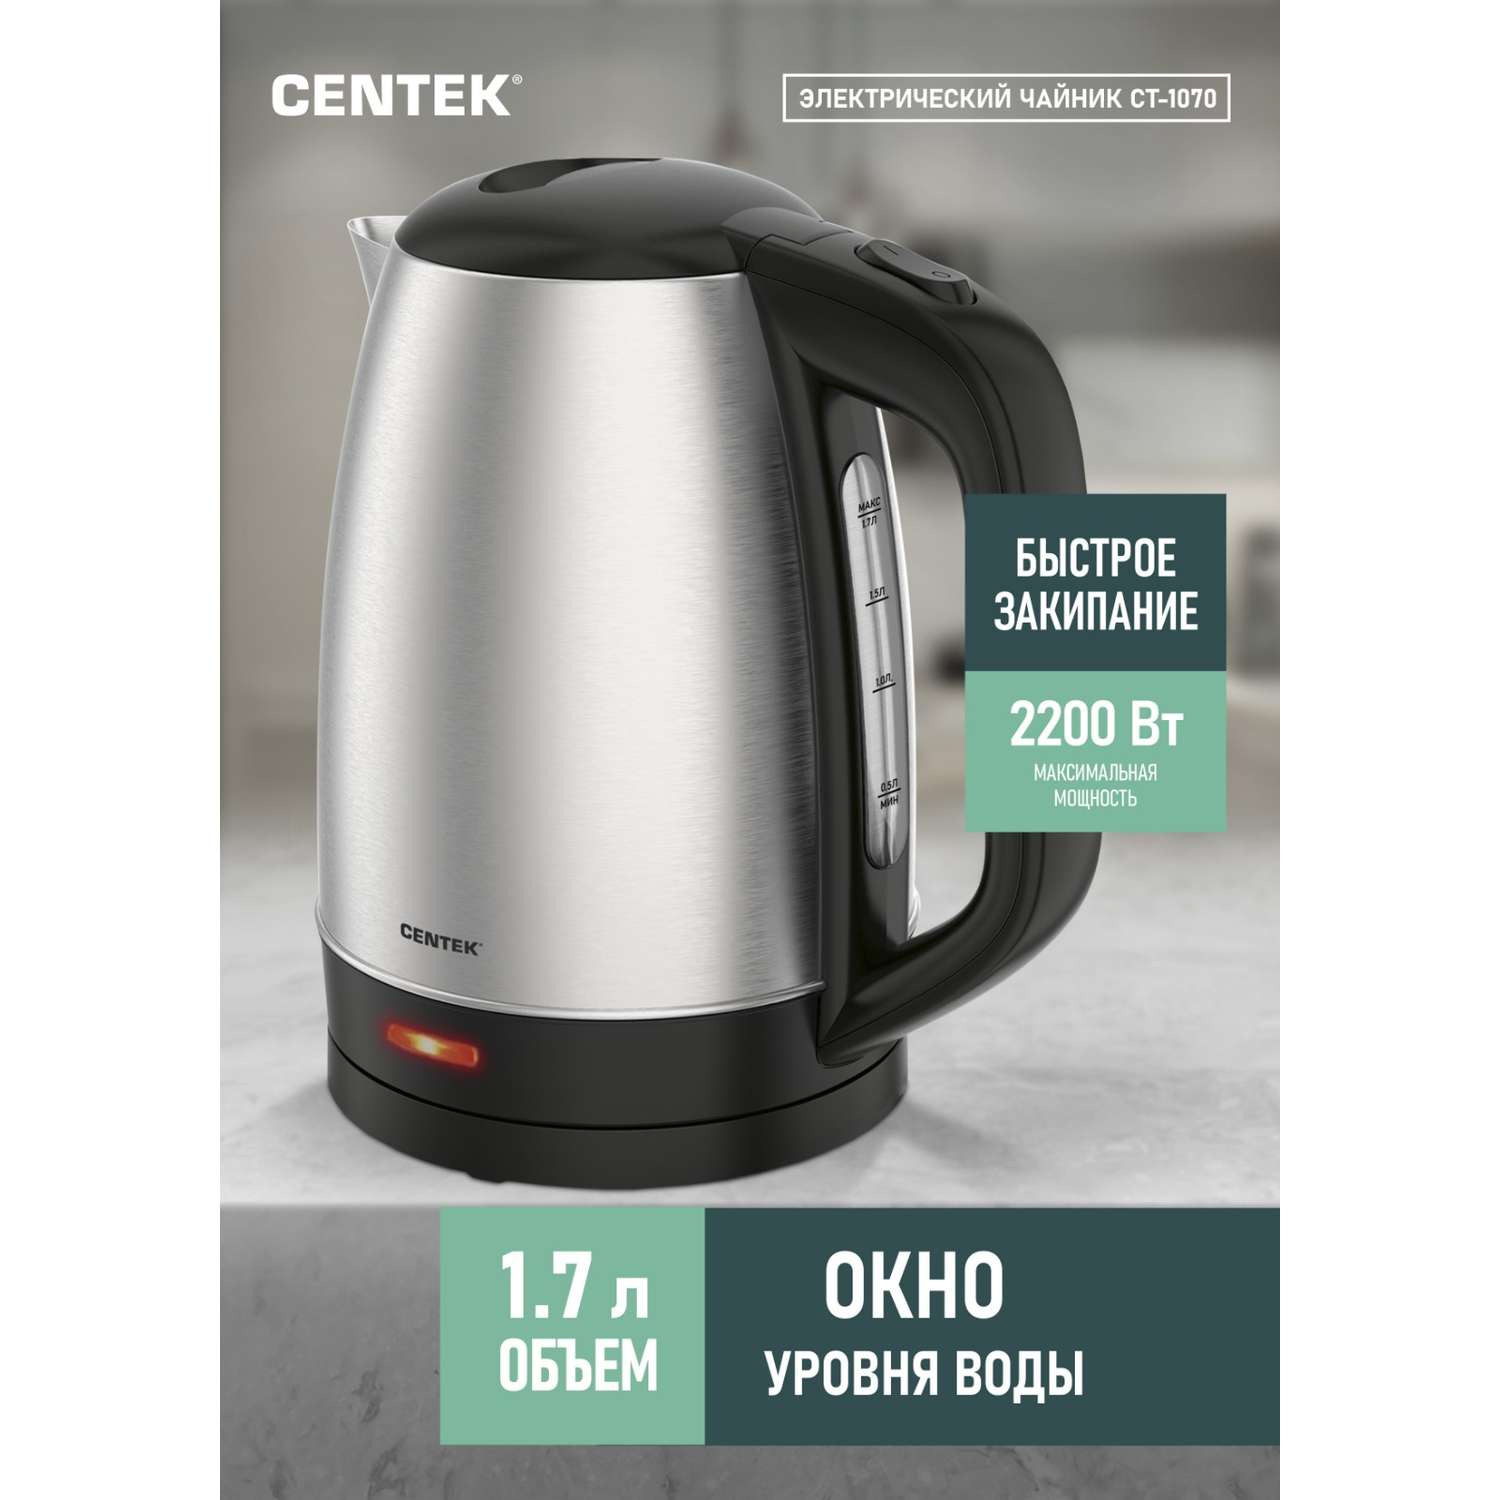 Электрический чайник CENTEK CT-1071 матовый 1.7 л стальной корпус - фото 1